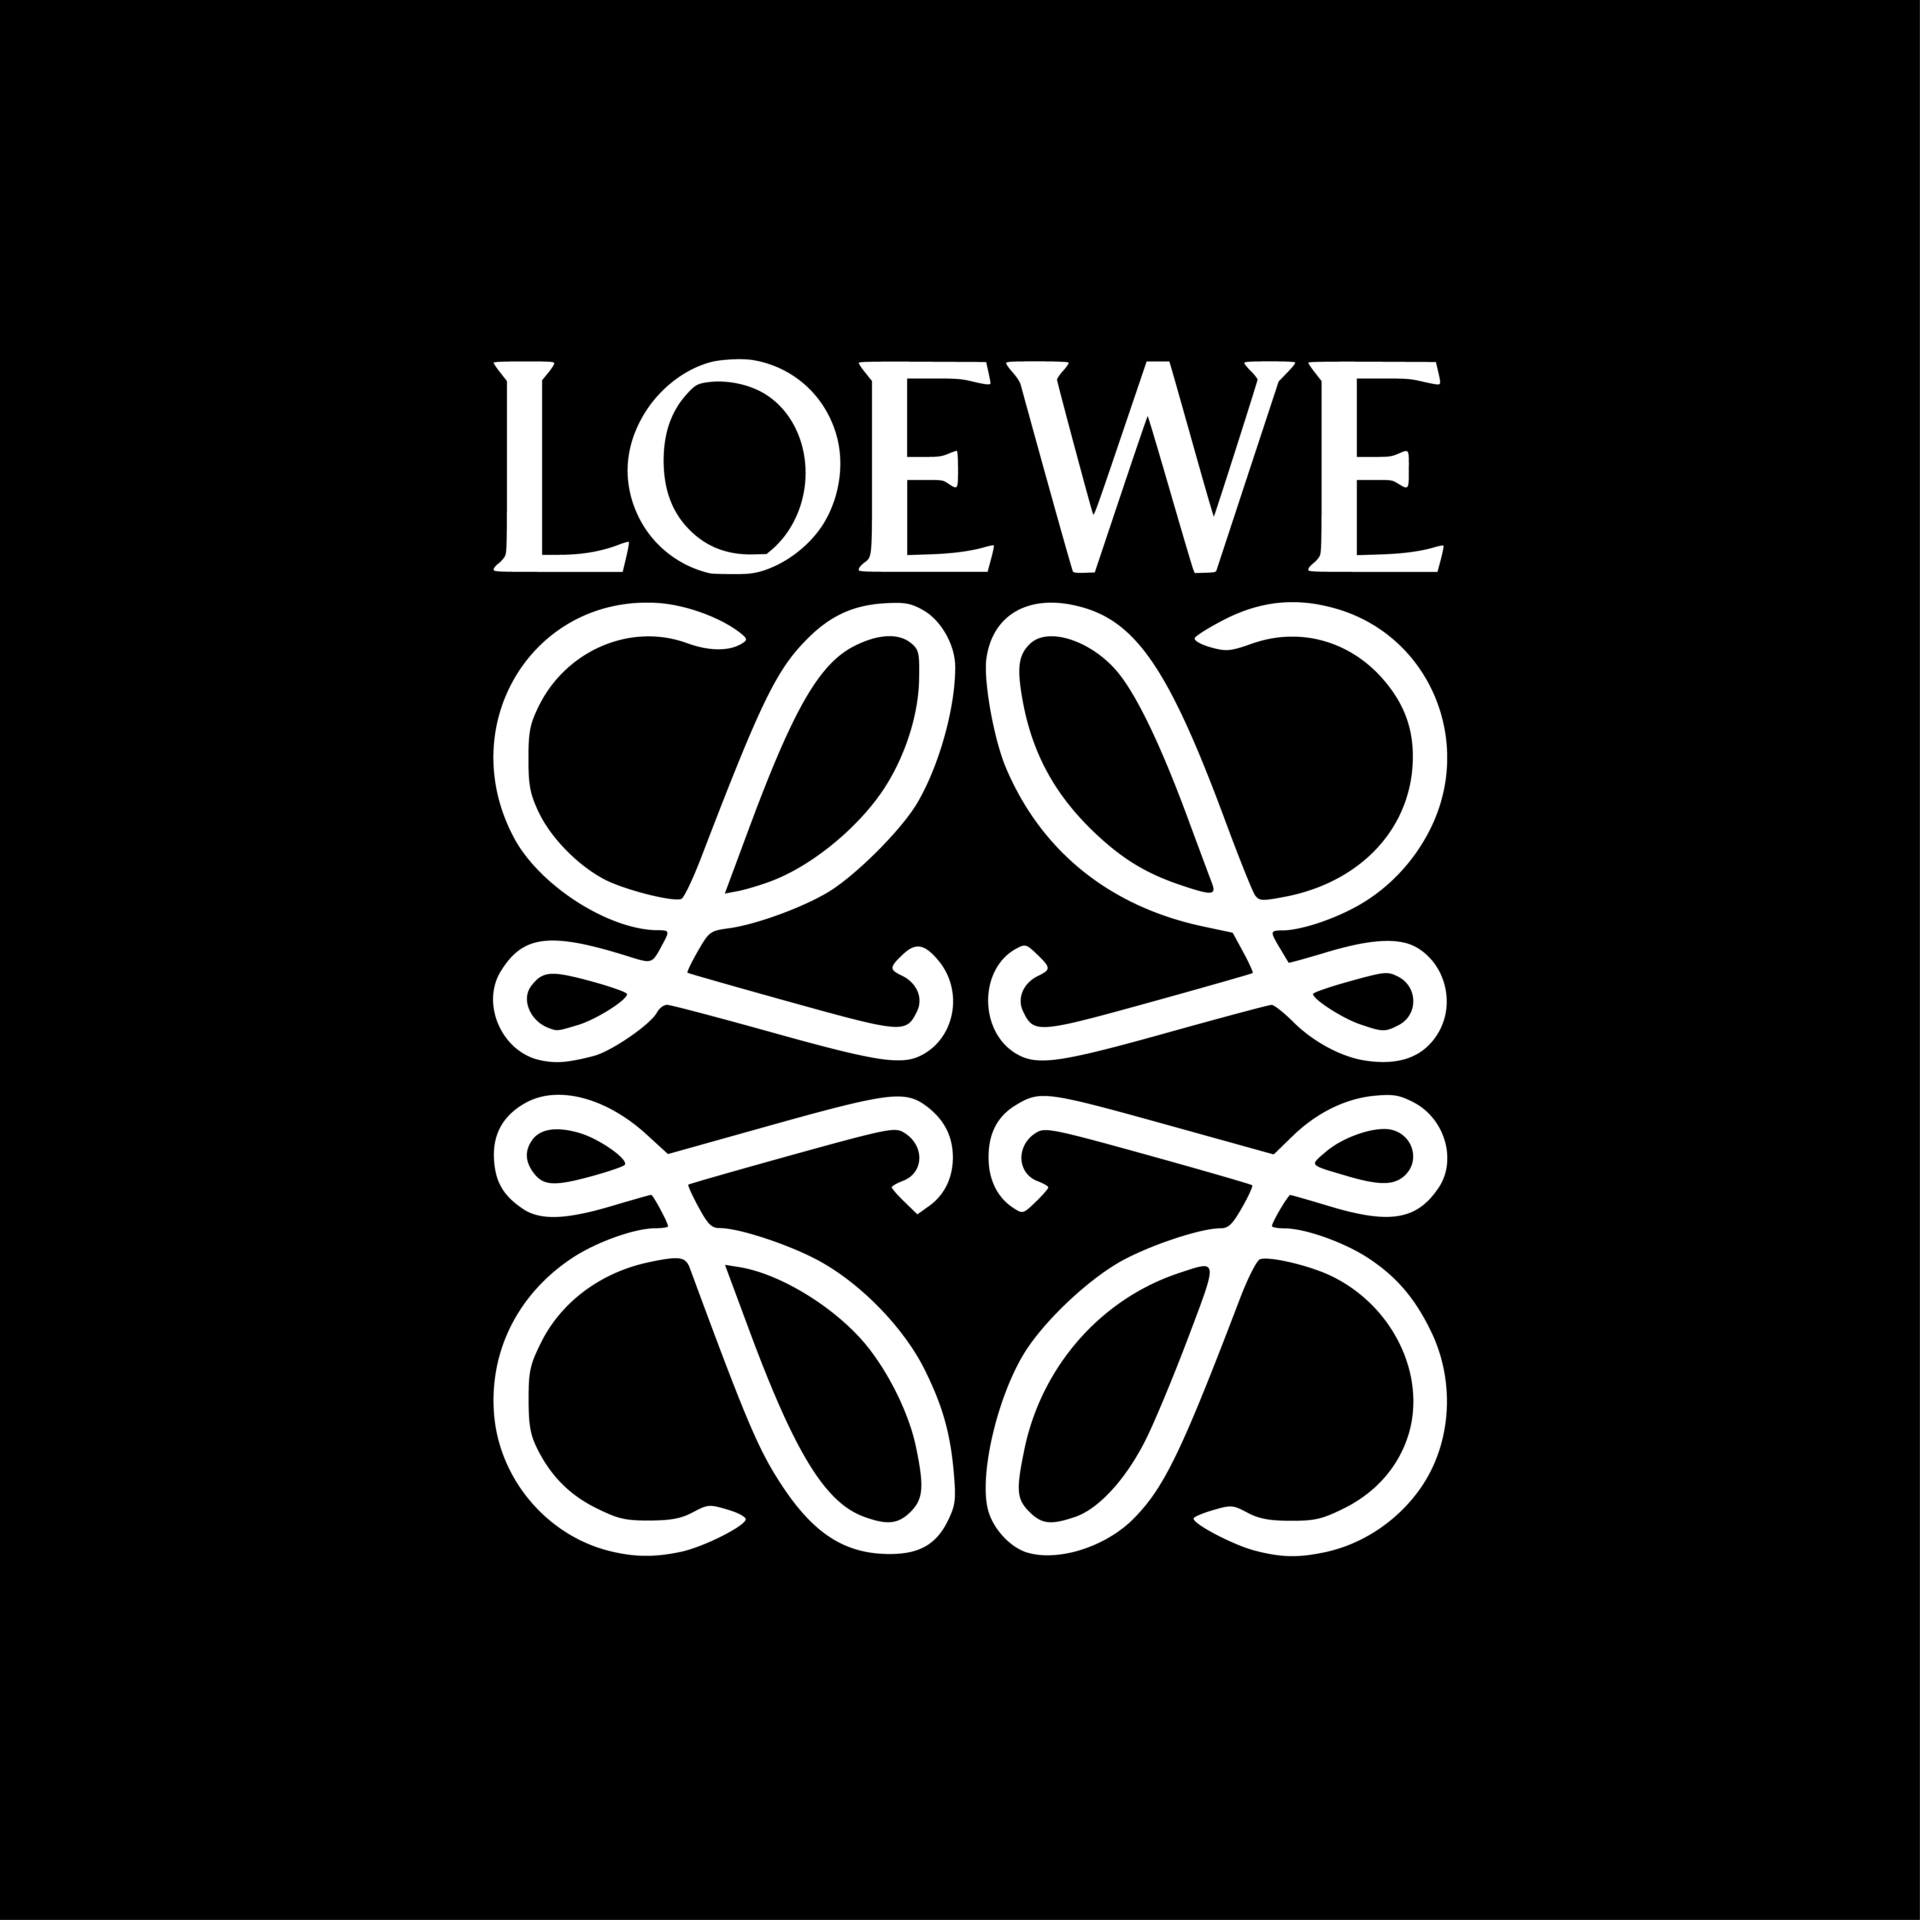 Loewe - Vibe Agency